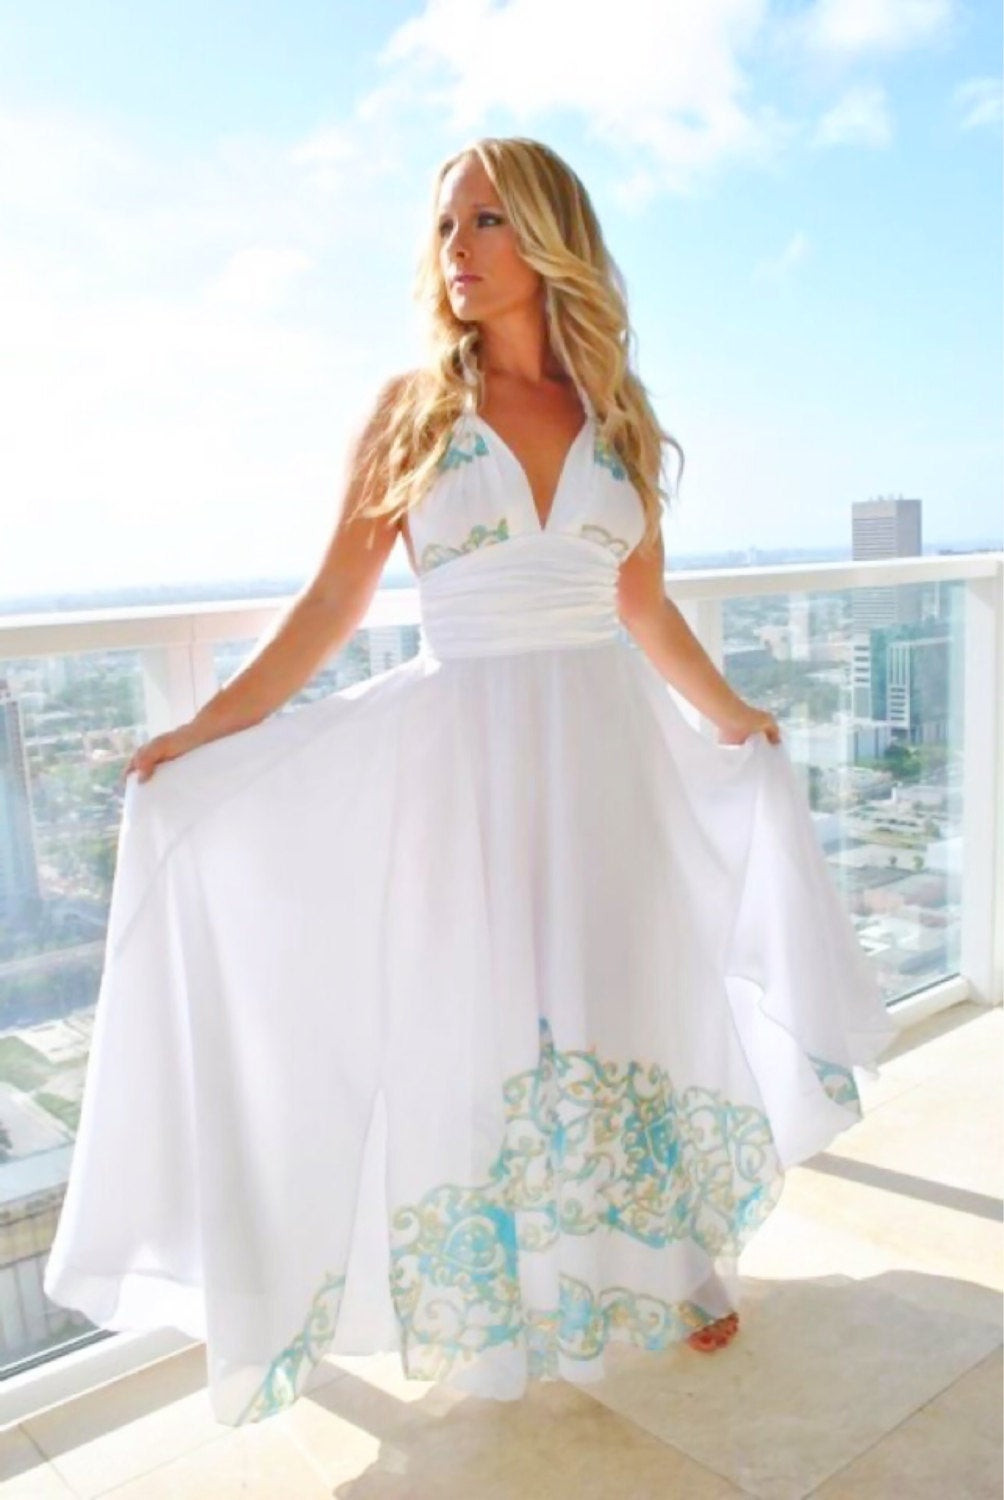 White Sundresses For Beach Wedding
 Long white couture beach wedding dress dresses white by